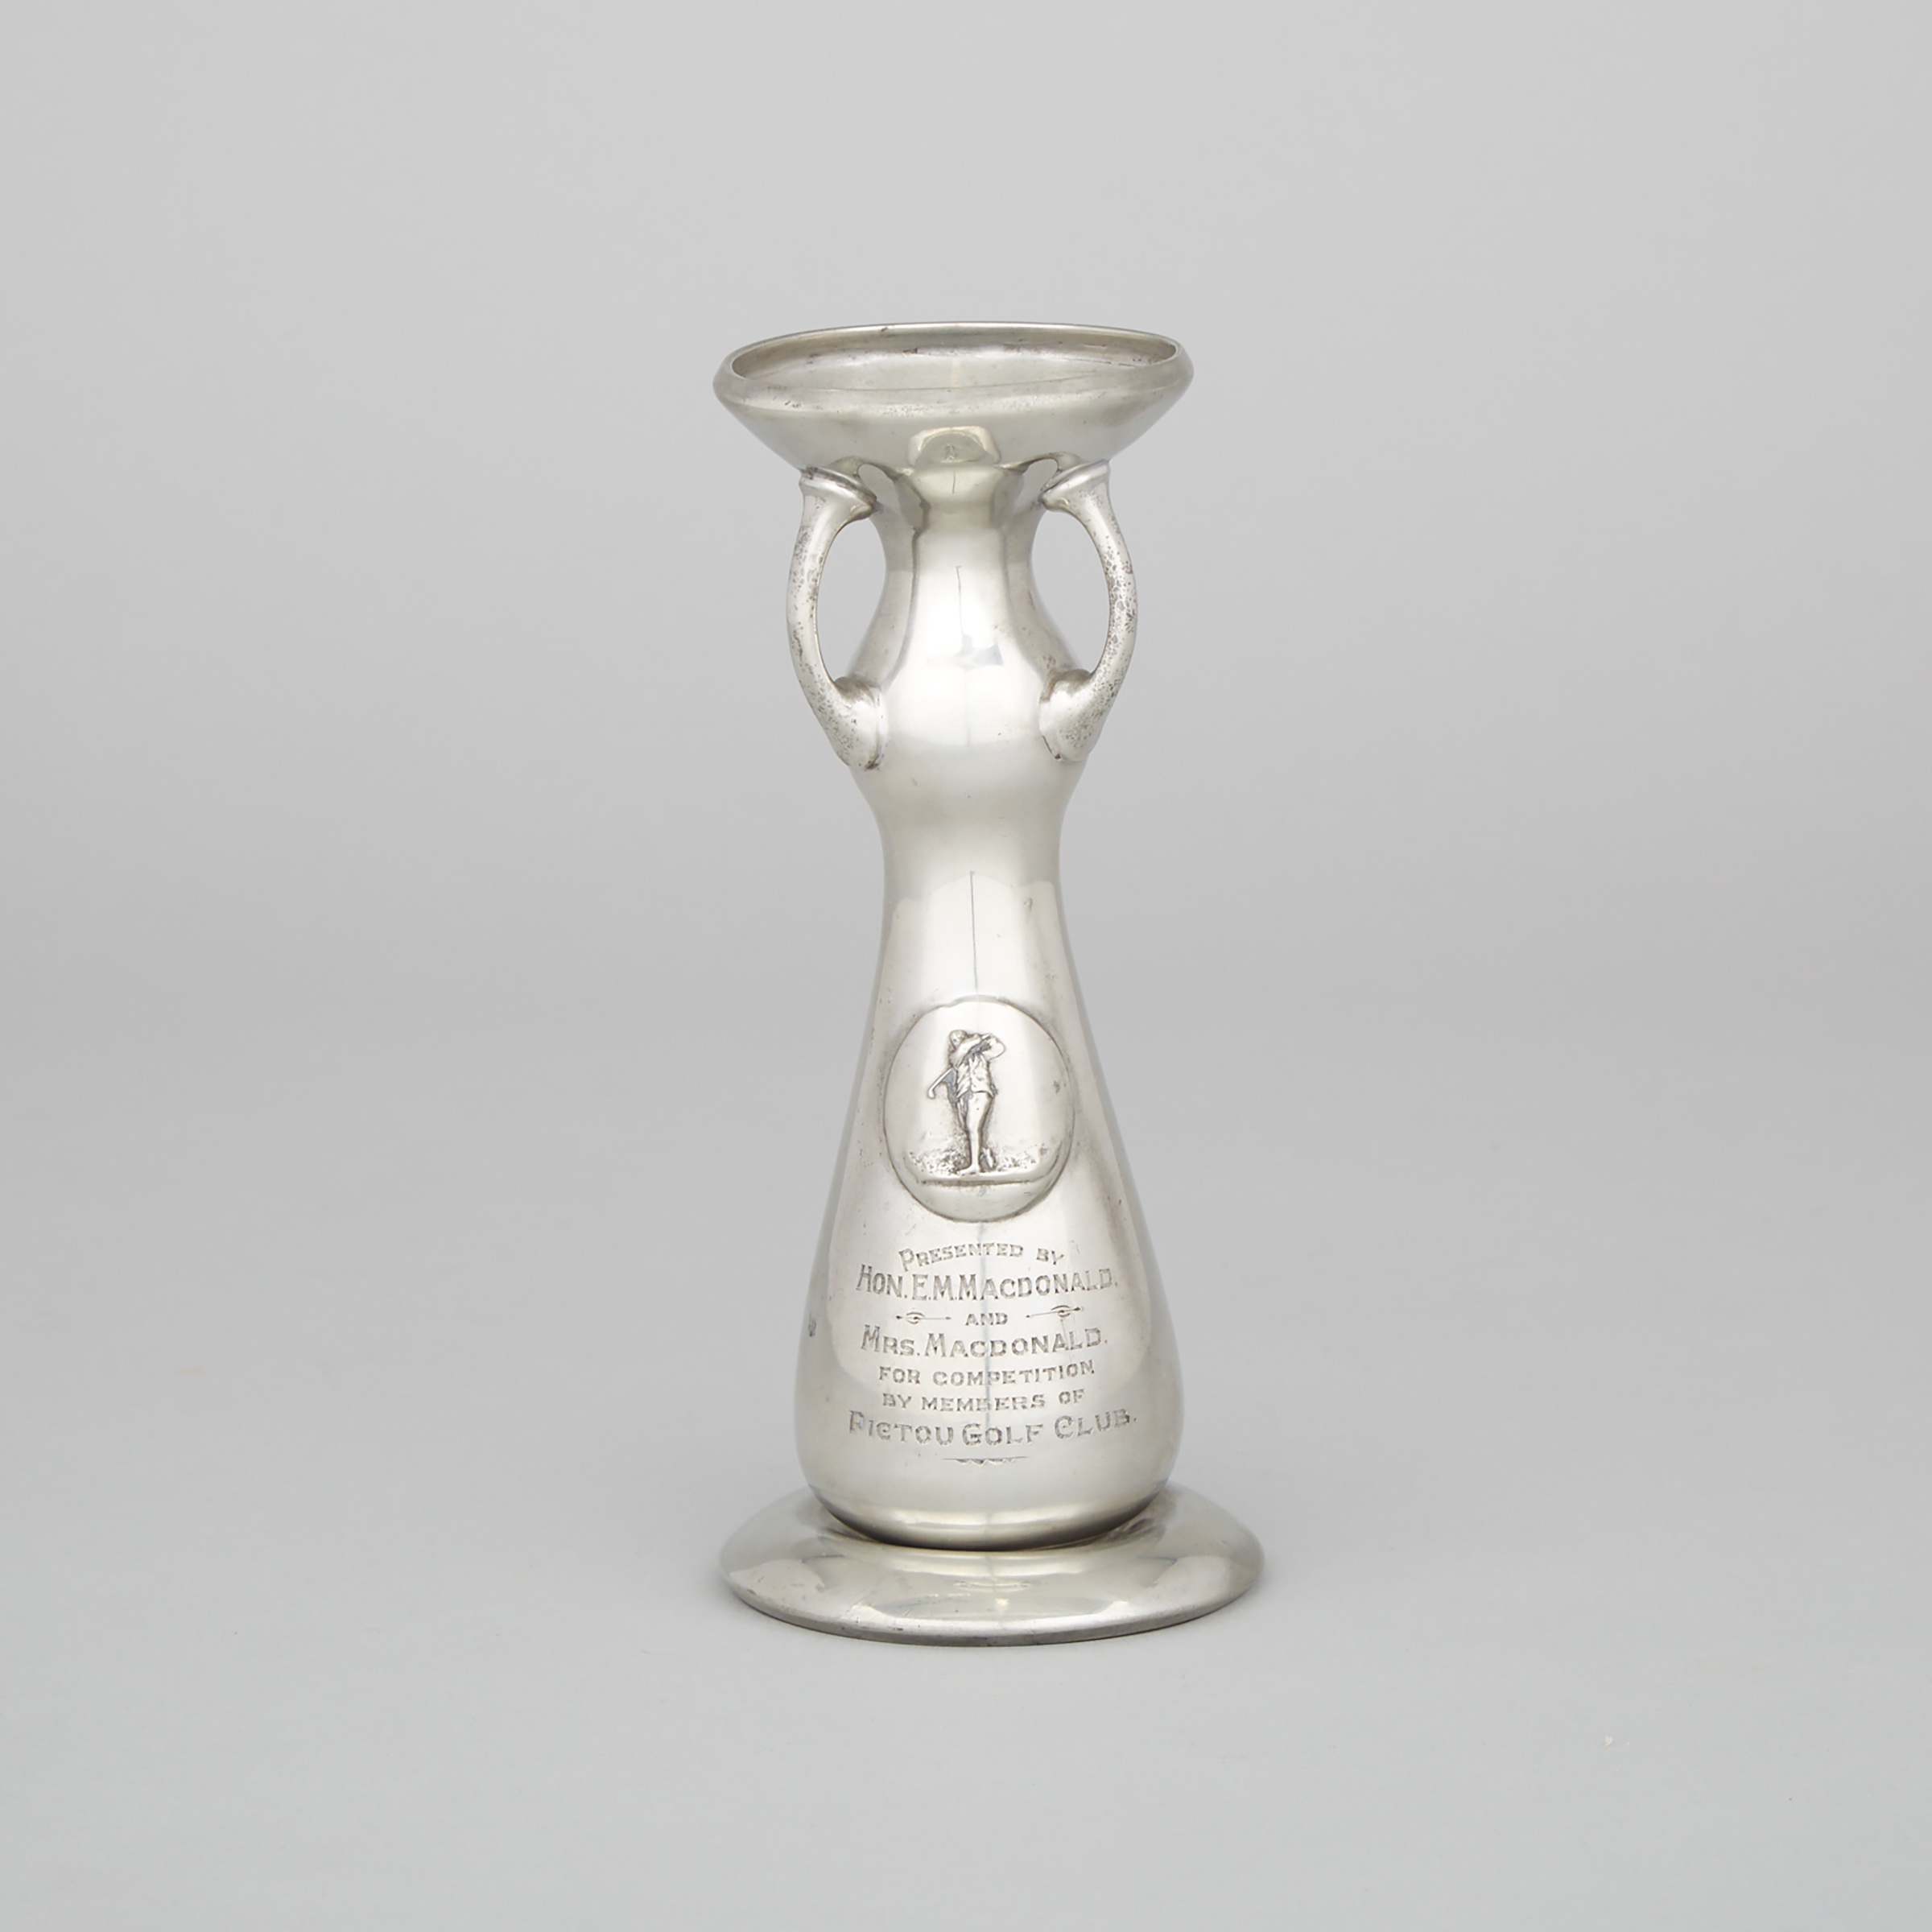 Pictou, Nova Scotia, Golf Club Presentation Tudric Pewter Vase by Liberty, London, early 20th century